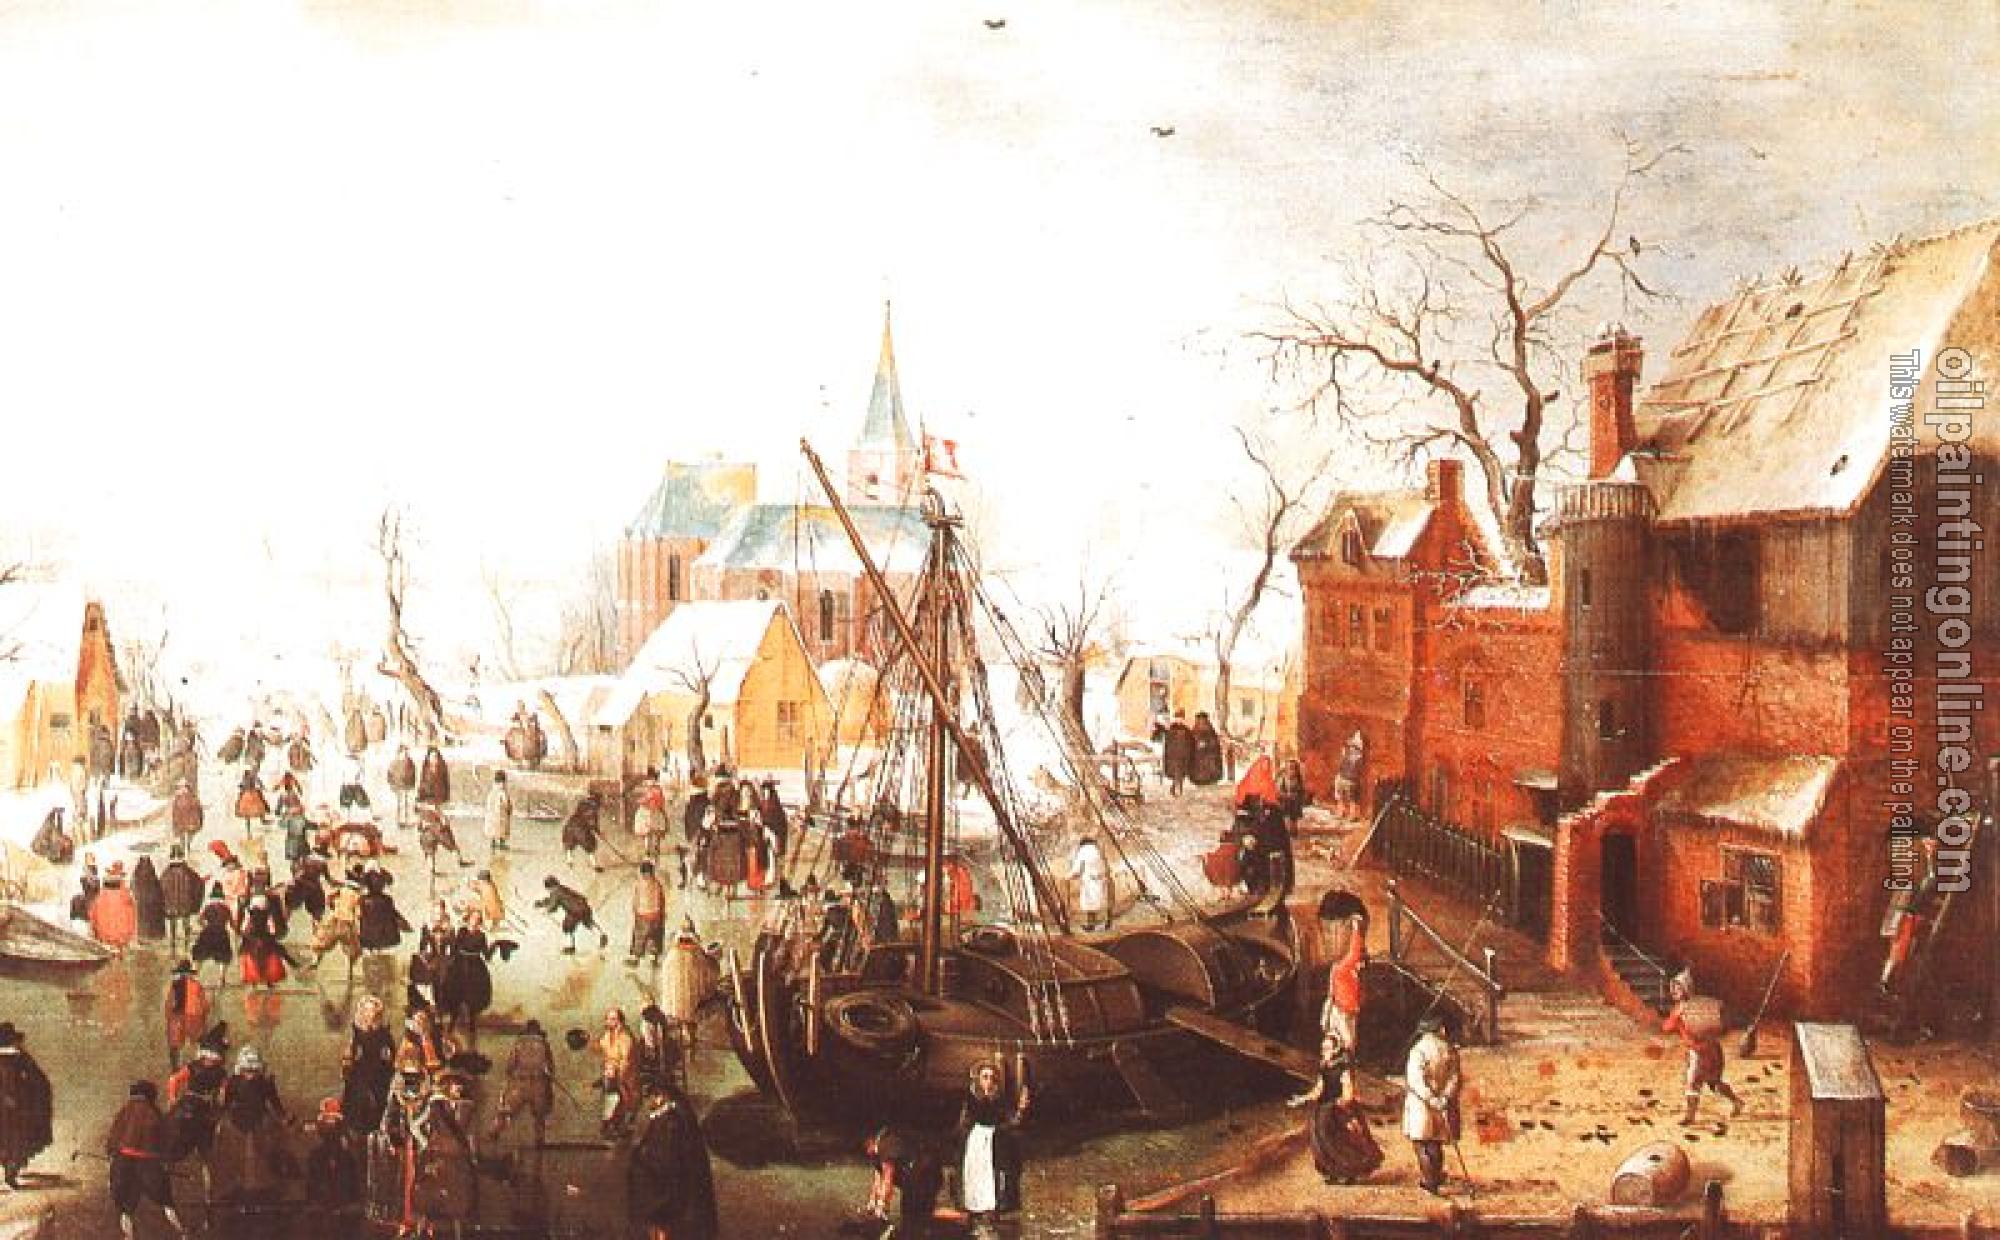 Avercamp, Hendrick - Graphic Winter Scene at Yselmuiden